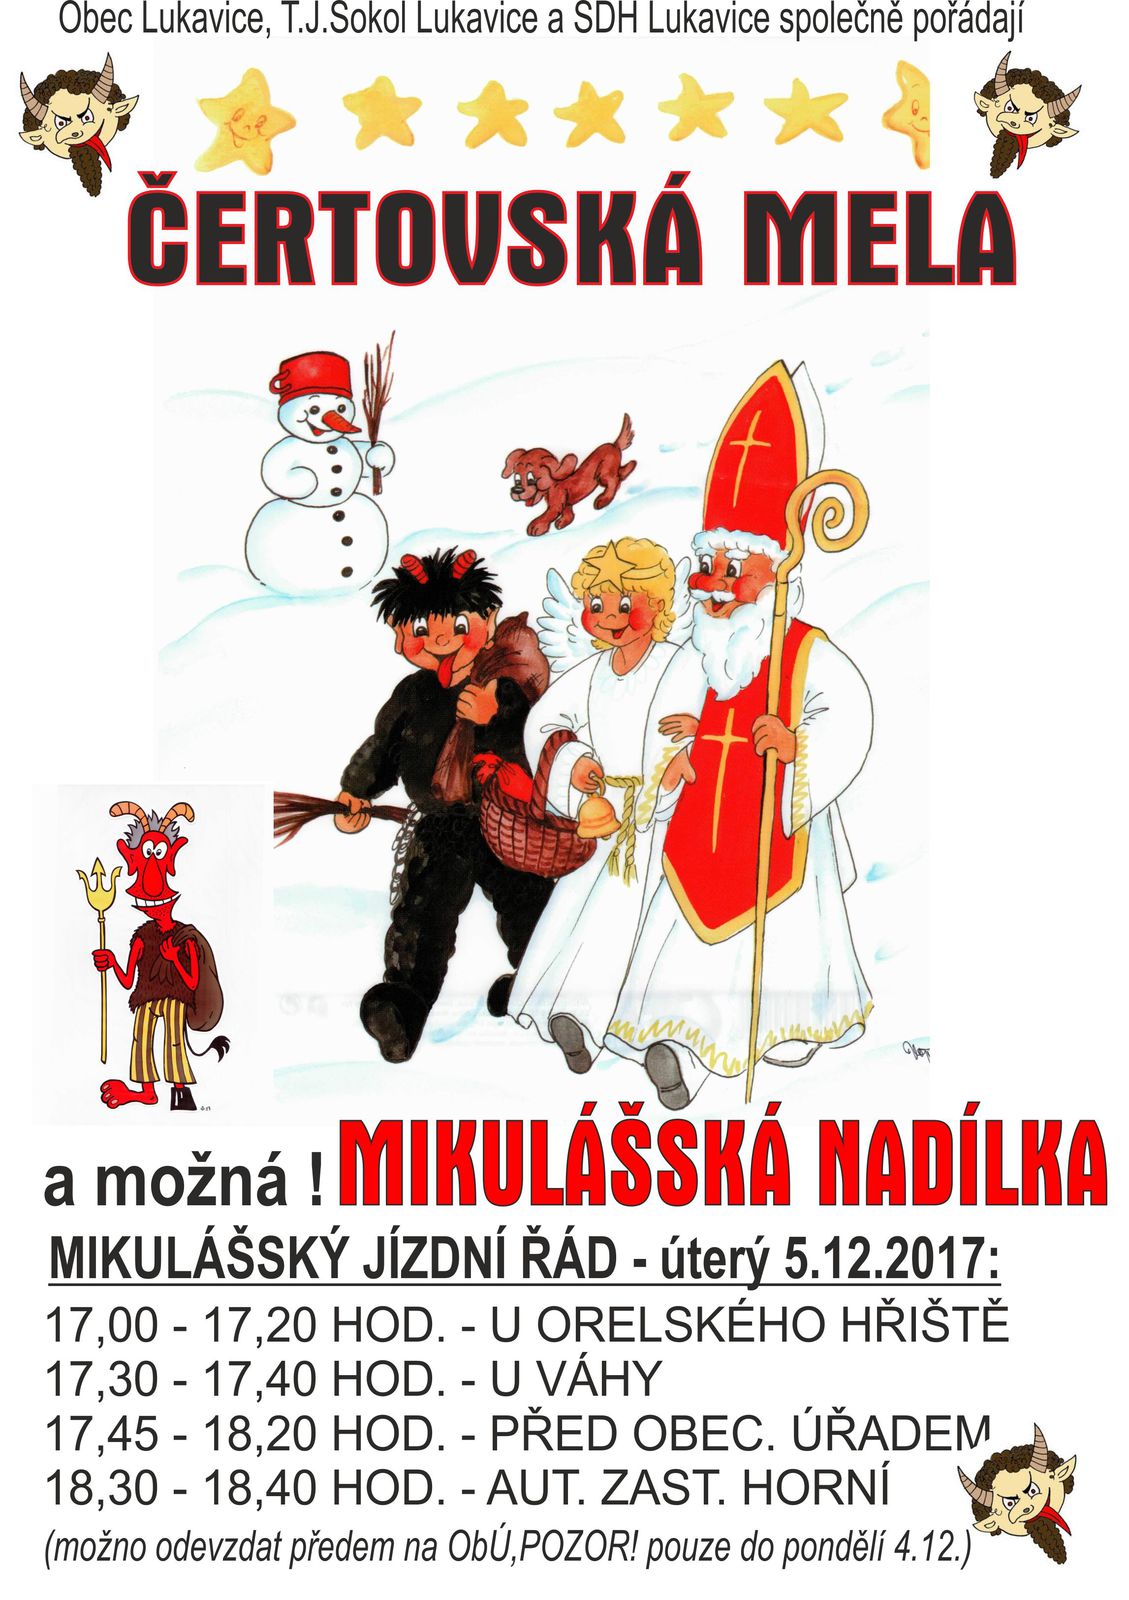 Mikulášská nadílka 2017.jpg